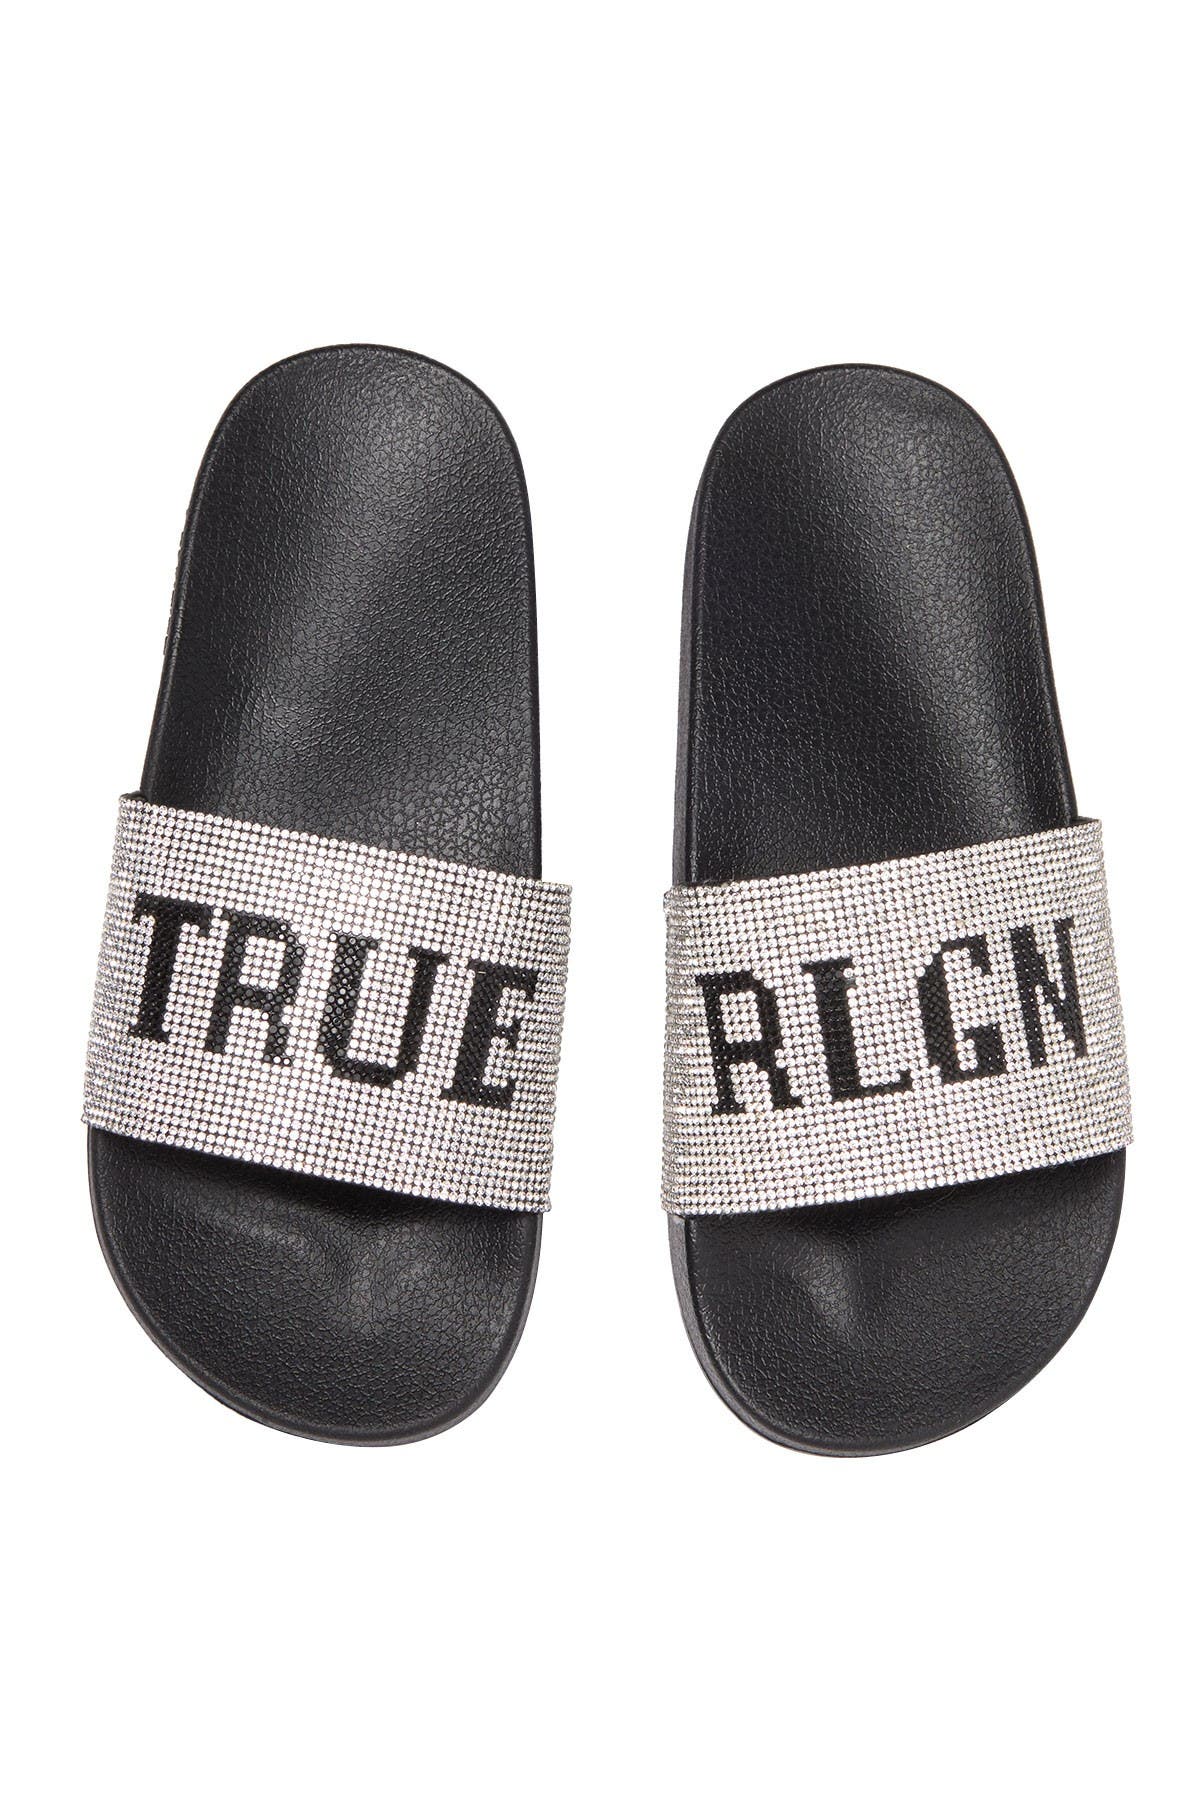 true religion flip flops